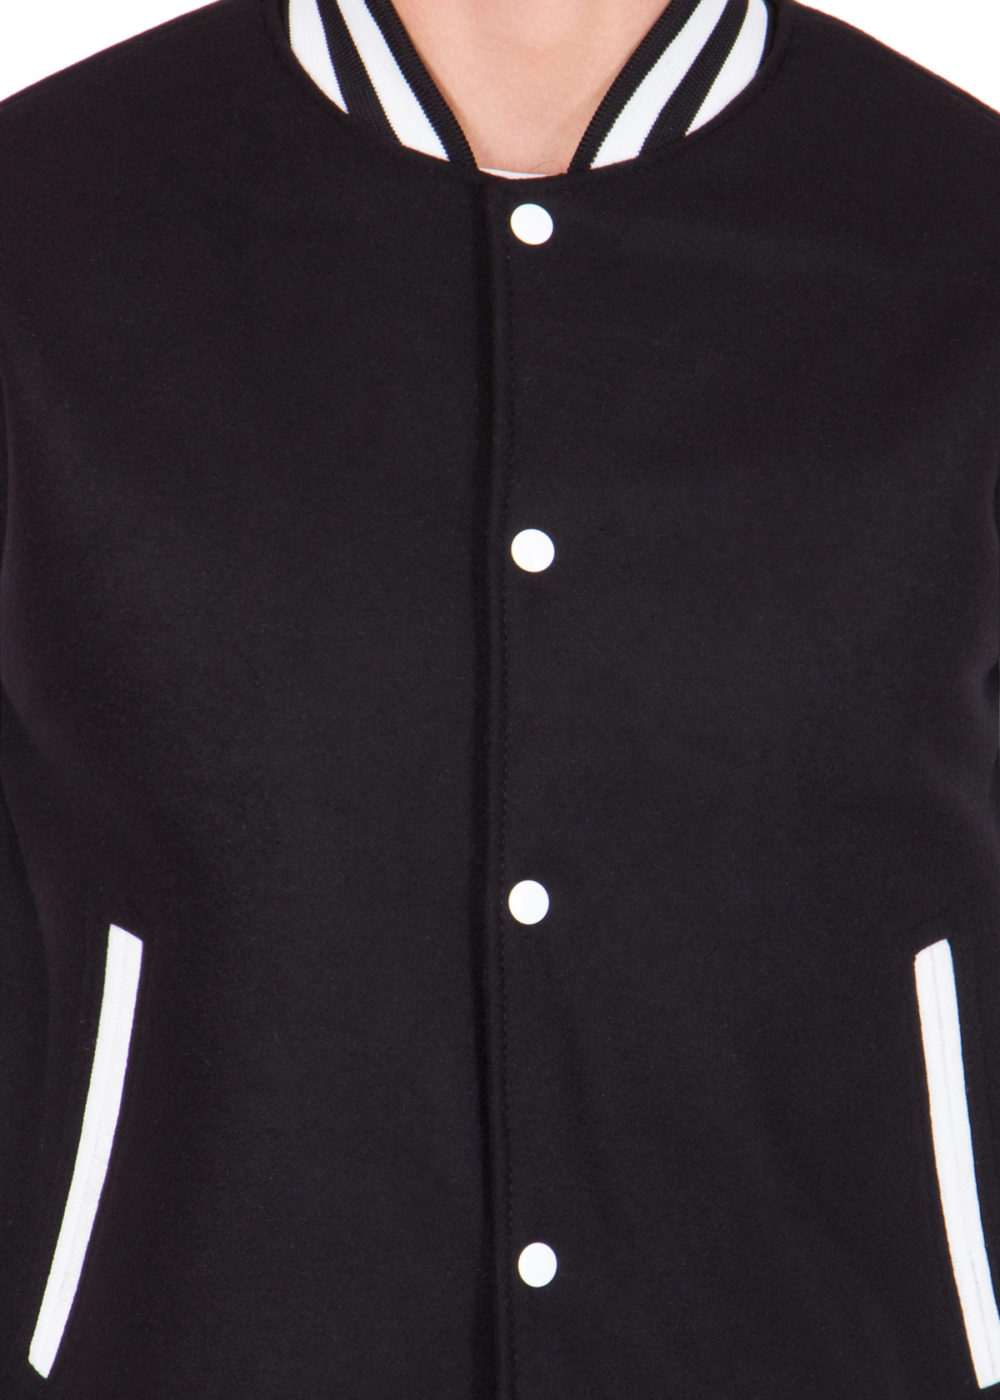 Men's Leather Black and Wool White Varsity Jacket - HJacket